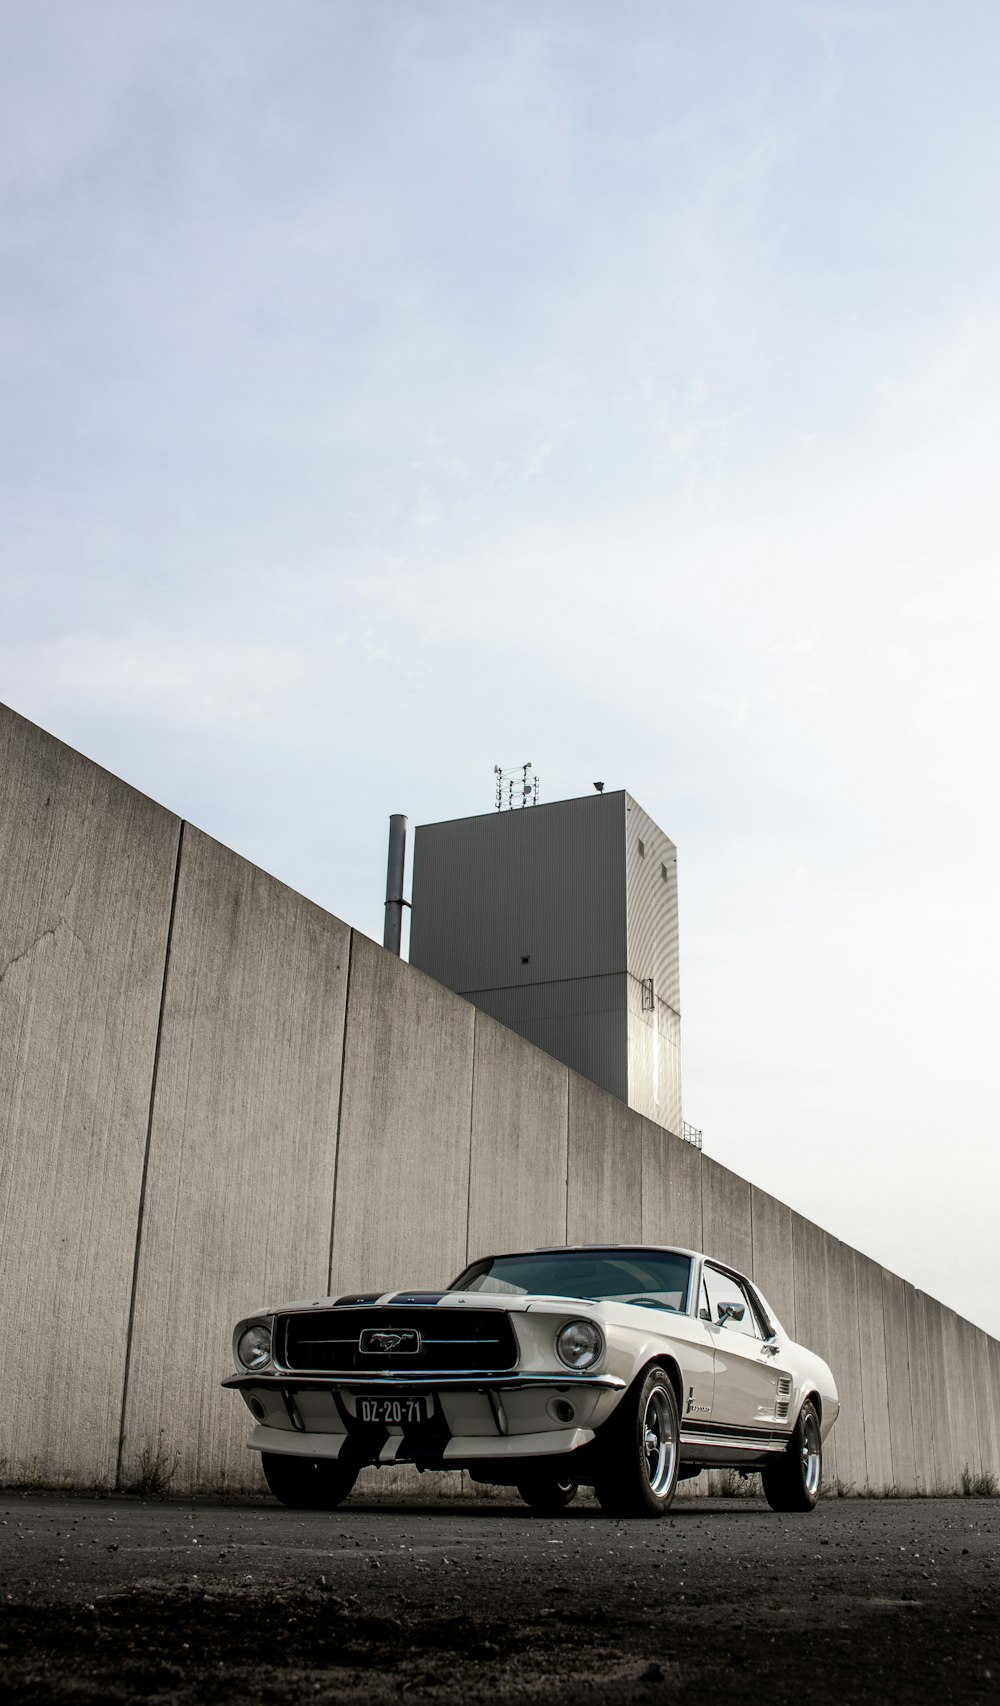 Auto in bianco e nero parcheggiata accanto al muro marrone